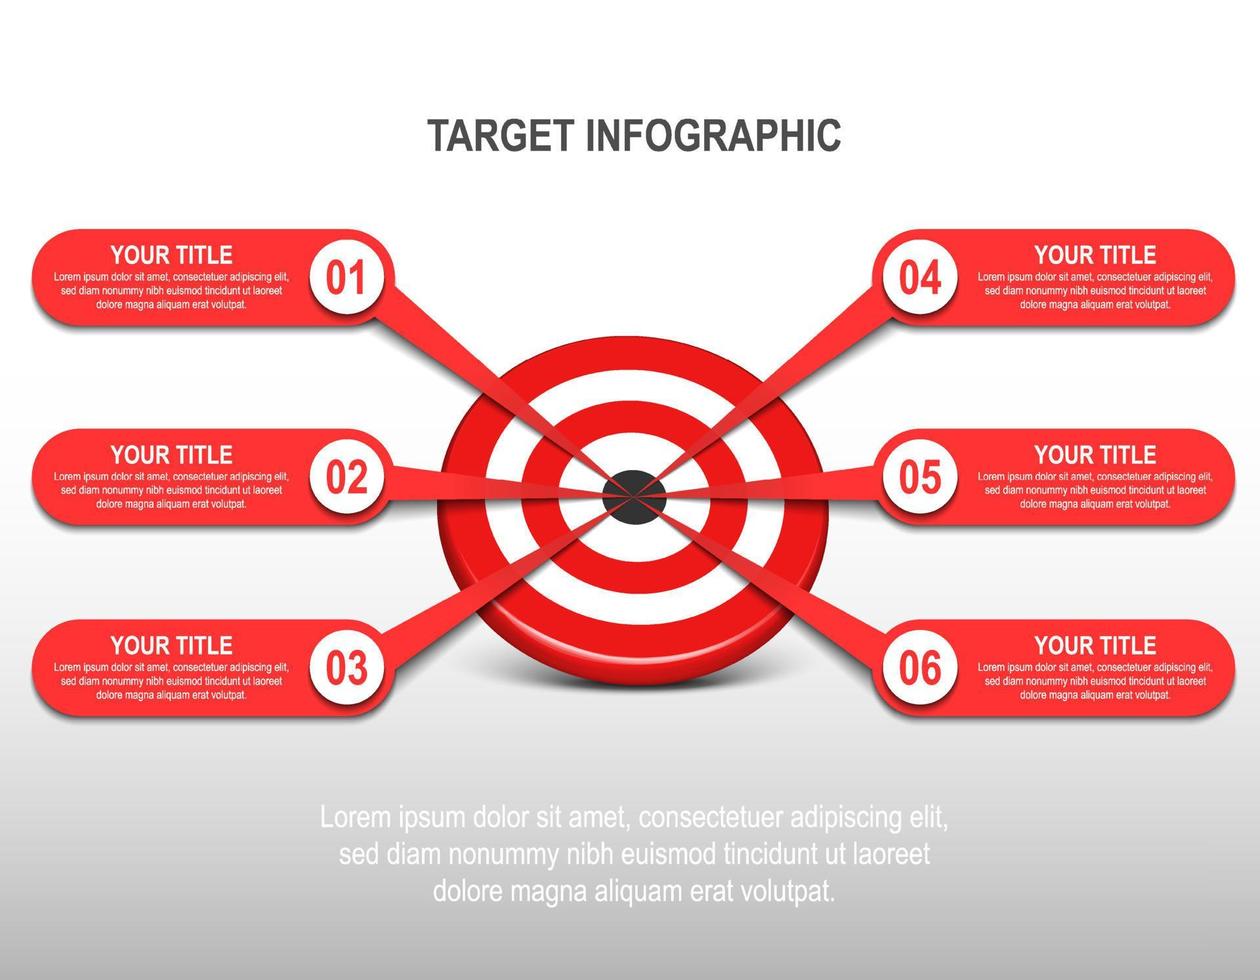 Jeu de fléchettes cible rouge 3d avec infographie d'étiquette. numéro d'étape cible. tableau de données d'entreprise, objectif d'investissement, défi marketing, présentation de la stratégie, diagramme de réalisation. modèle de vecteur d'informations.